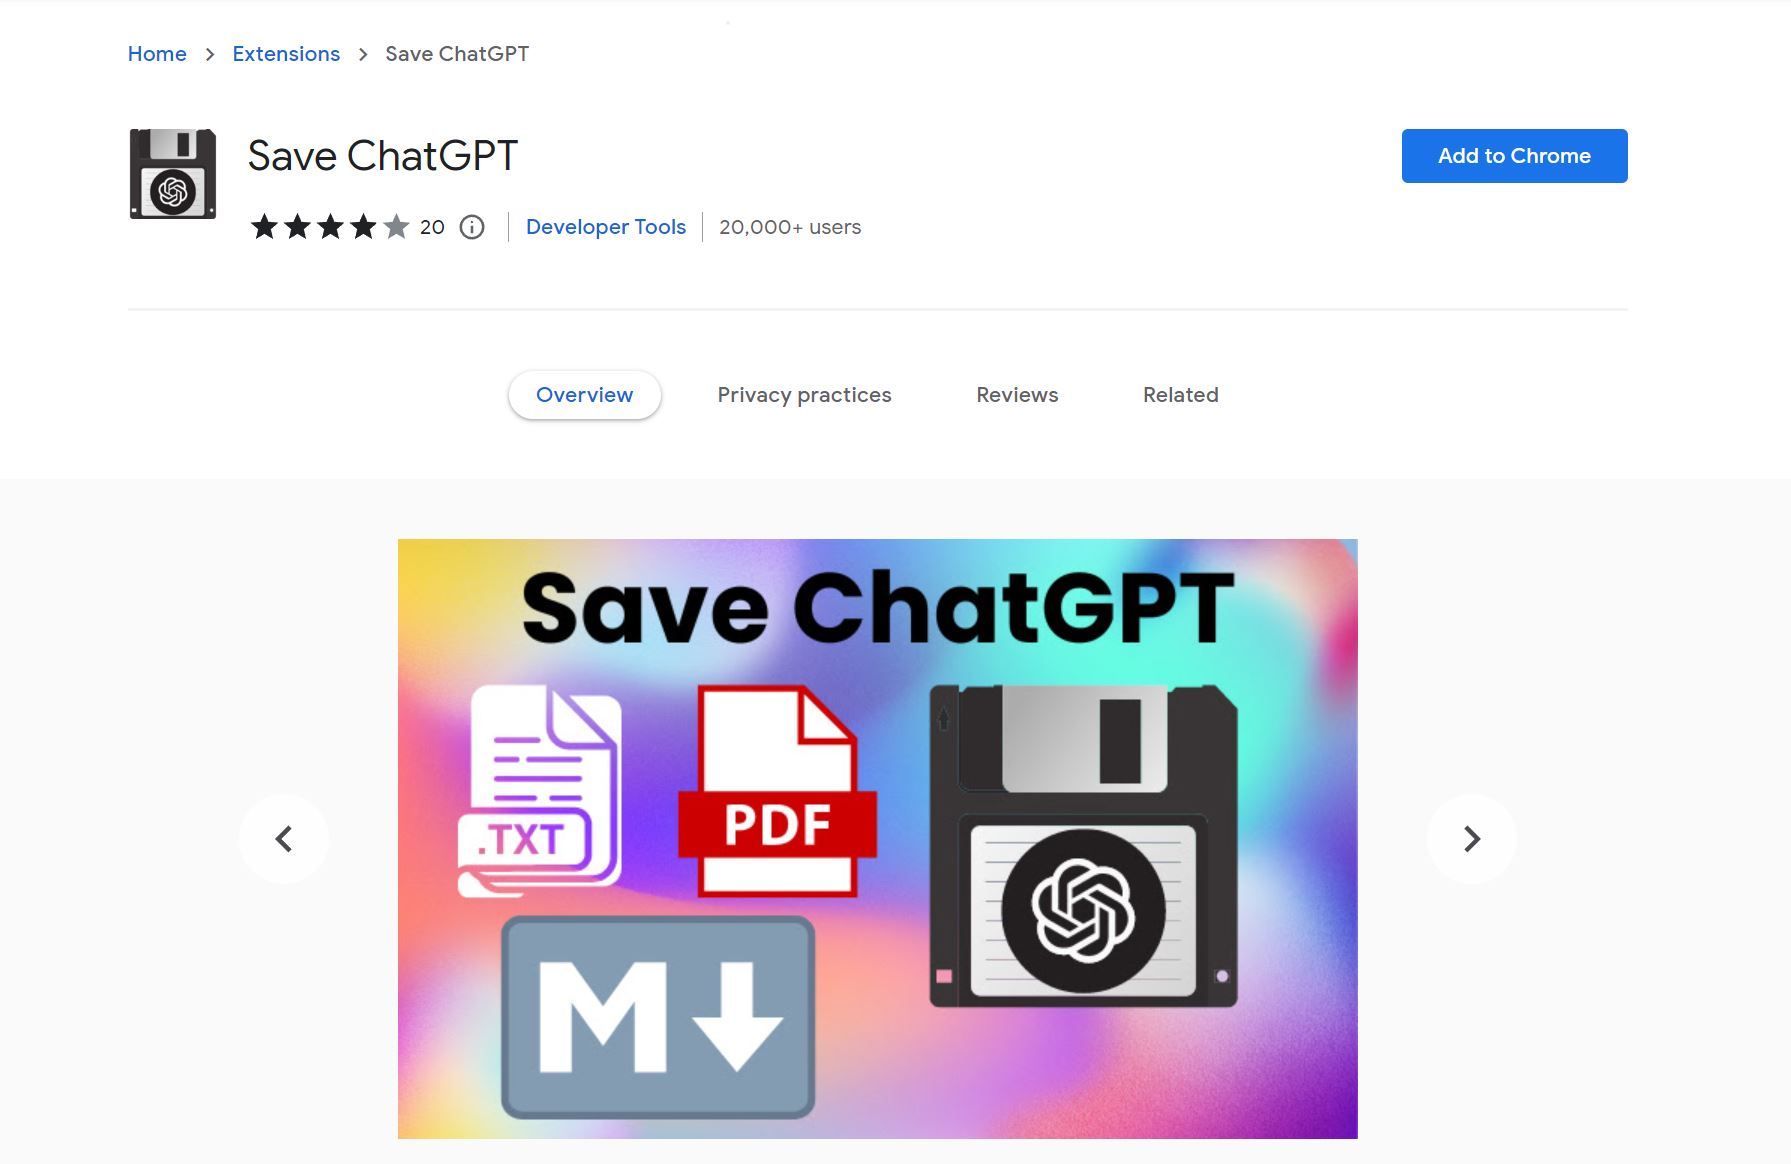 Post: Save ChatGPT